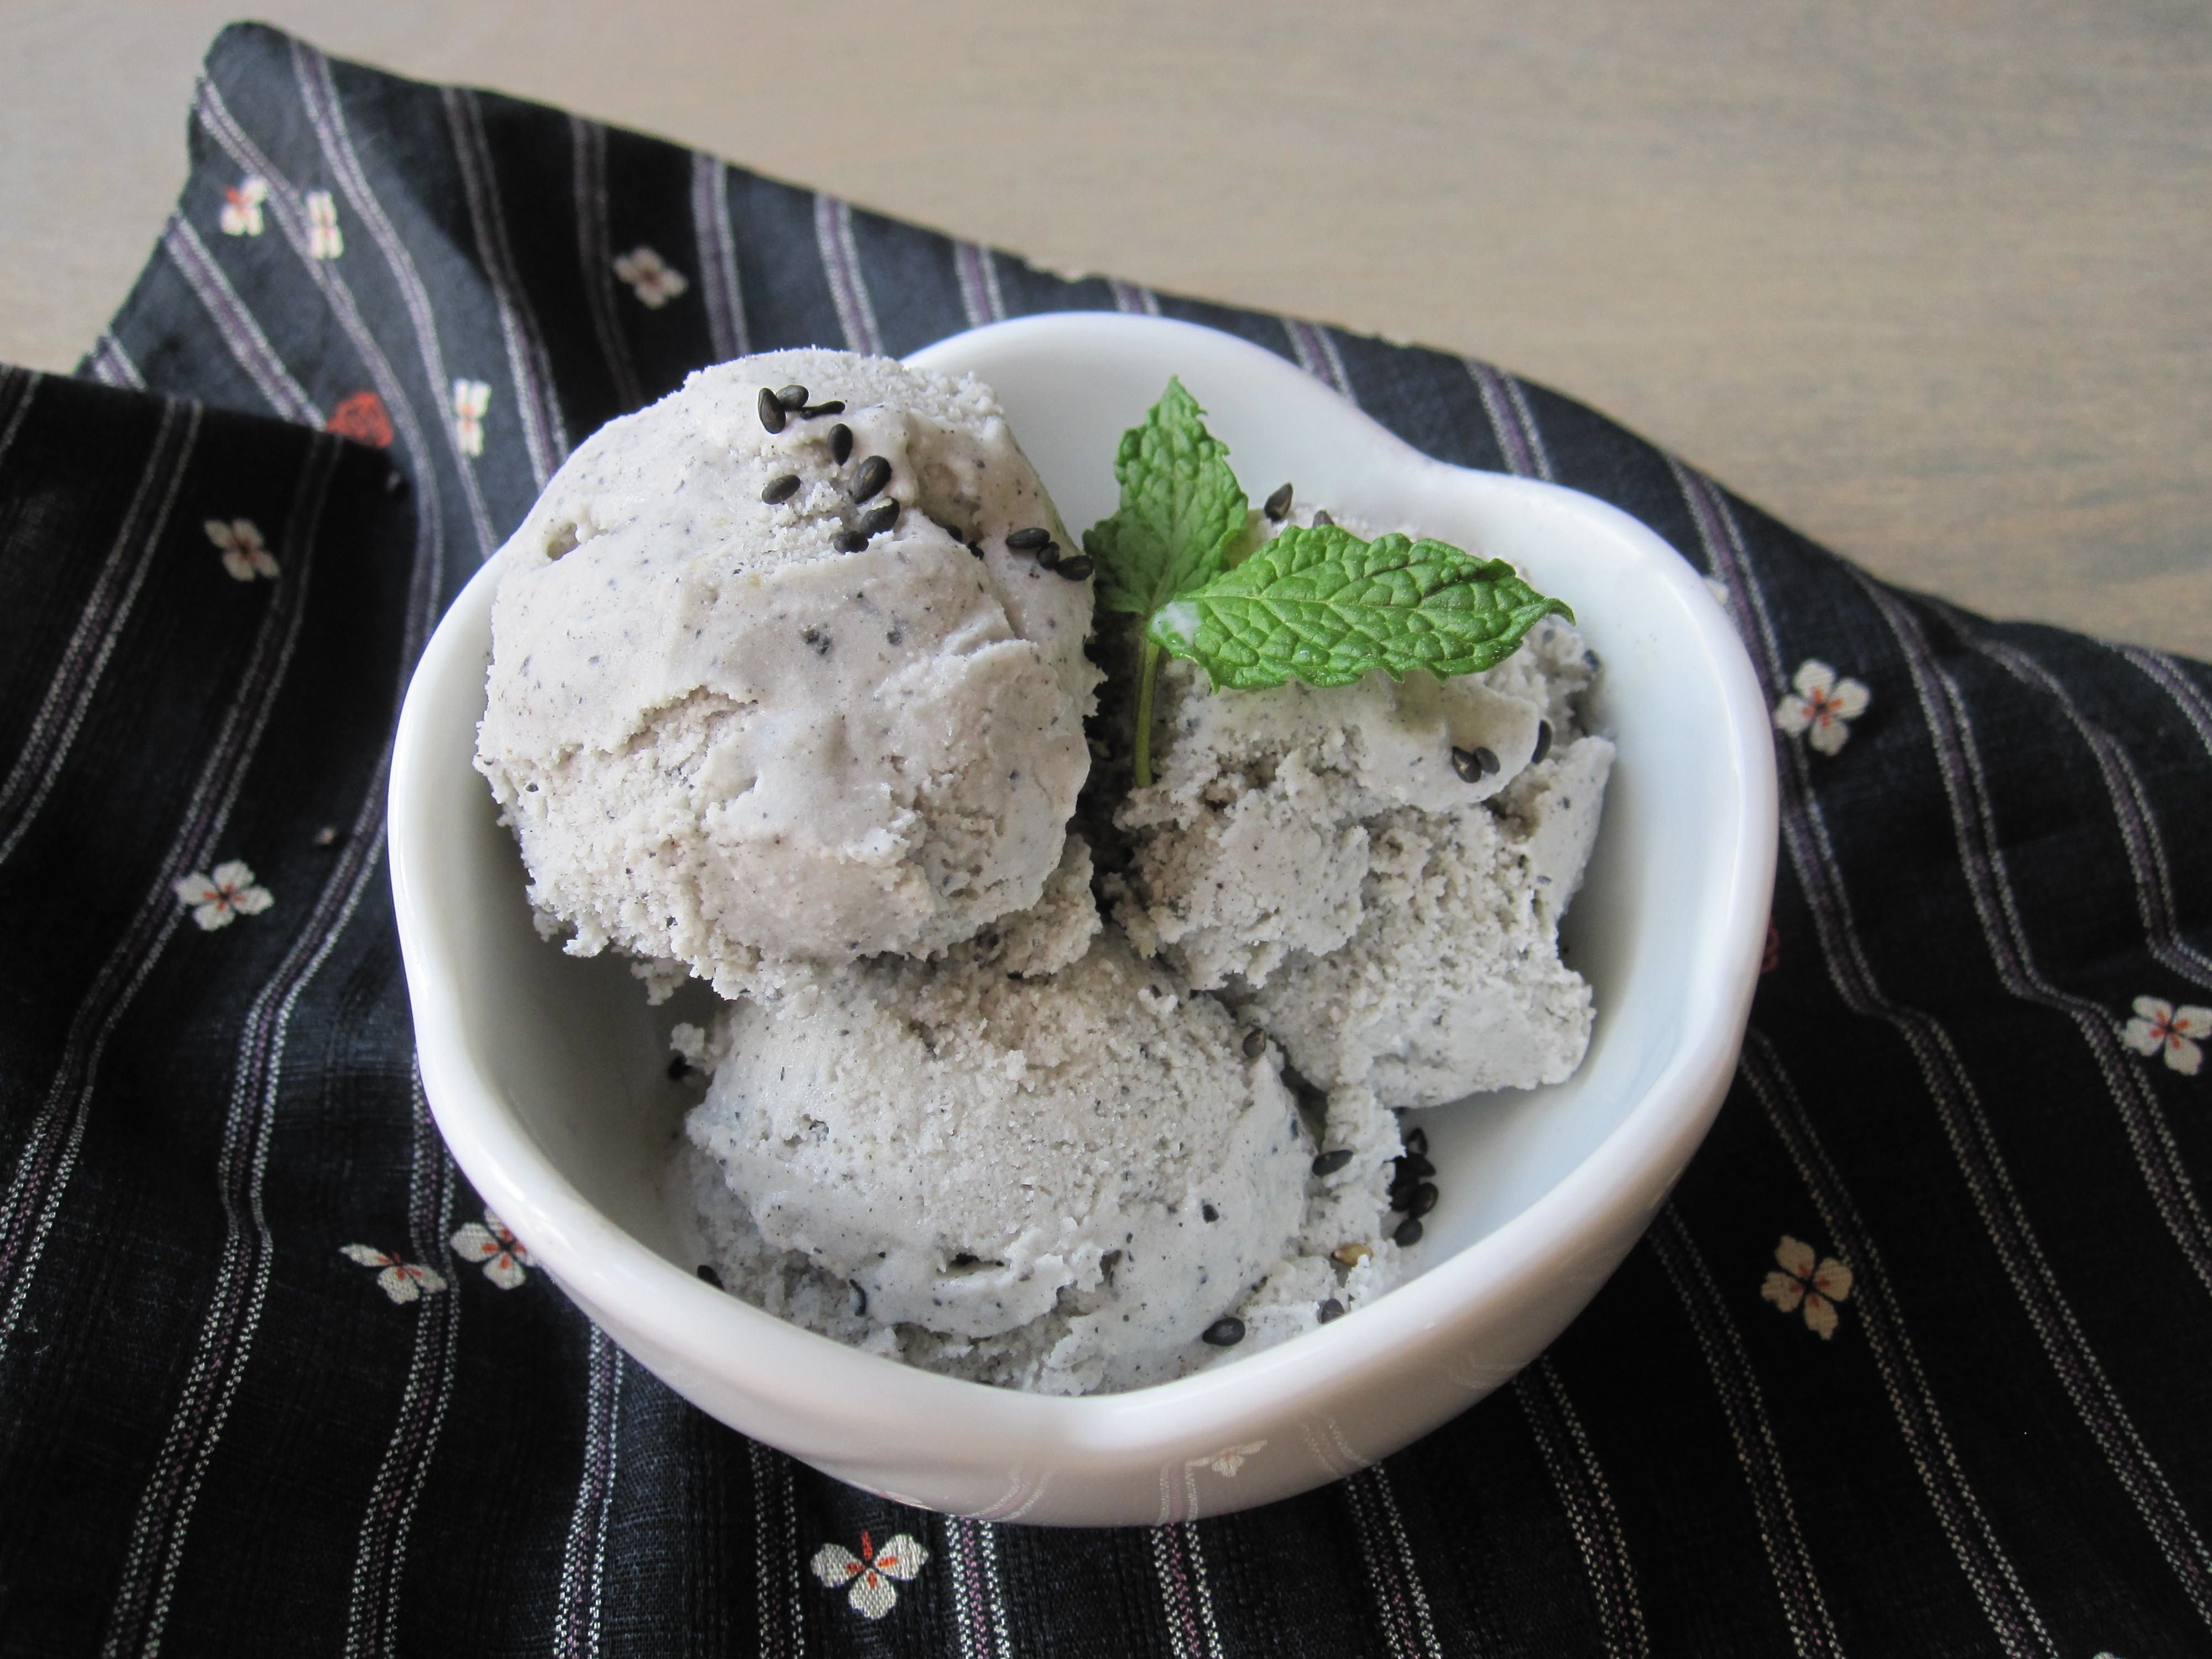 Kurogoma Ice Cream (Roasted Black Sesame Dessert)